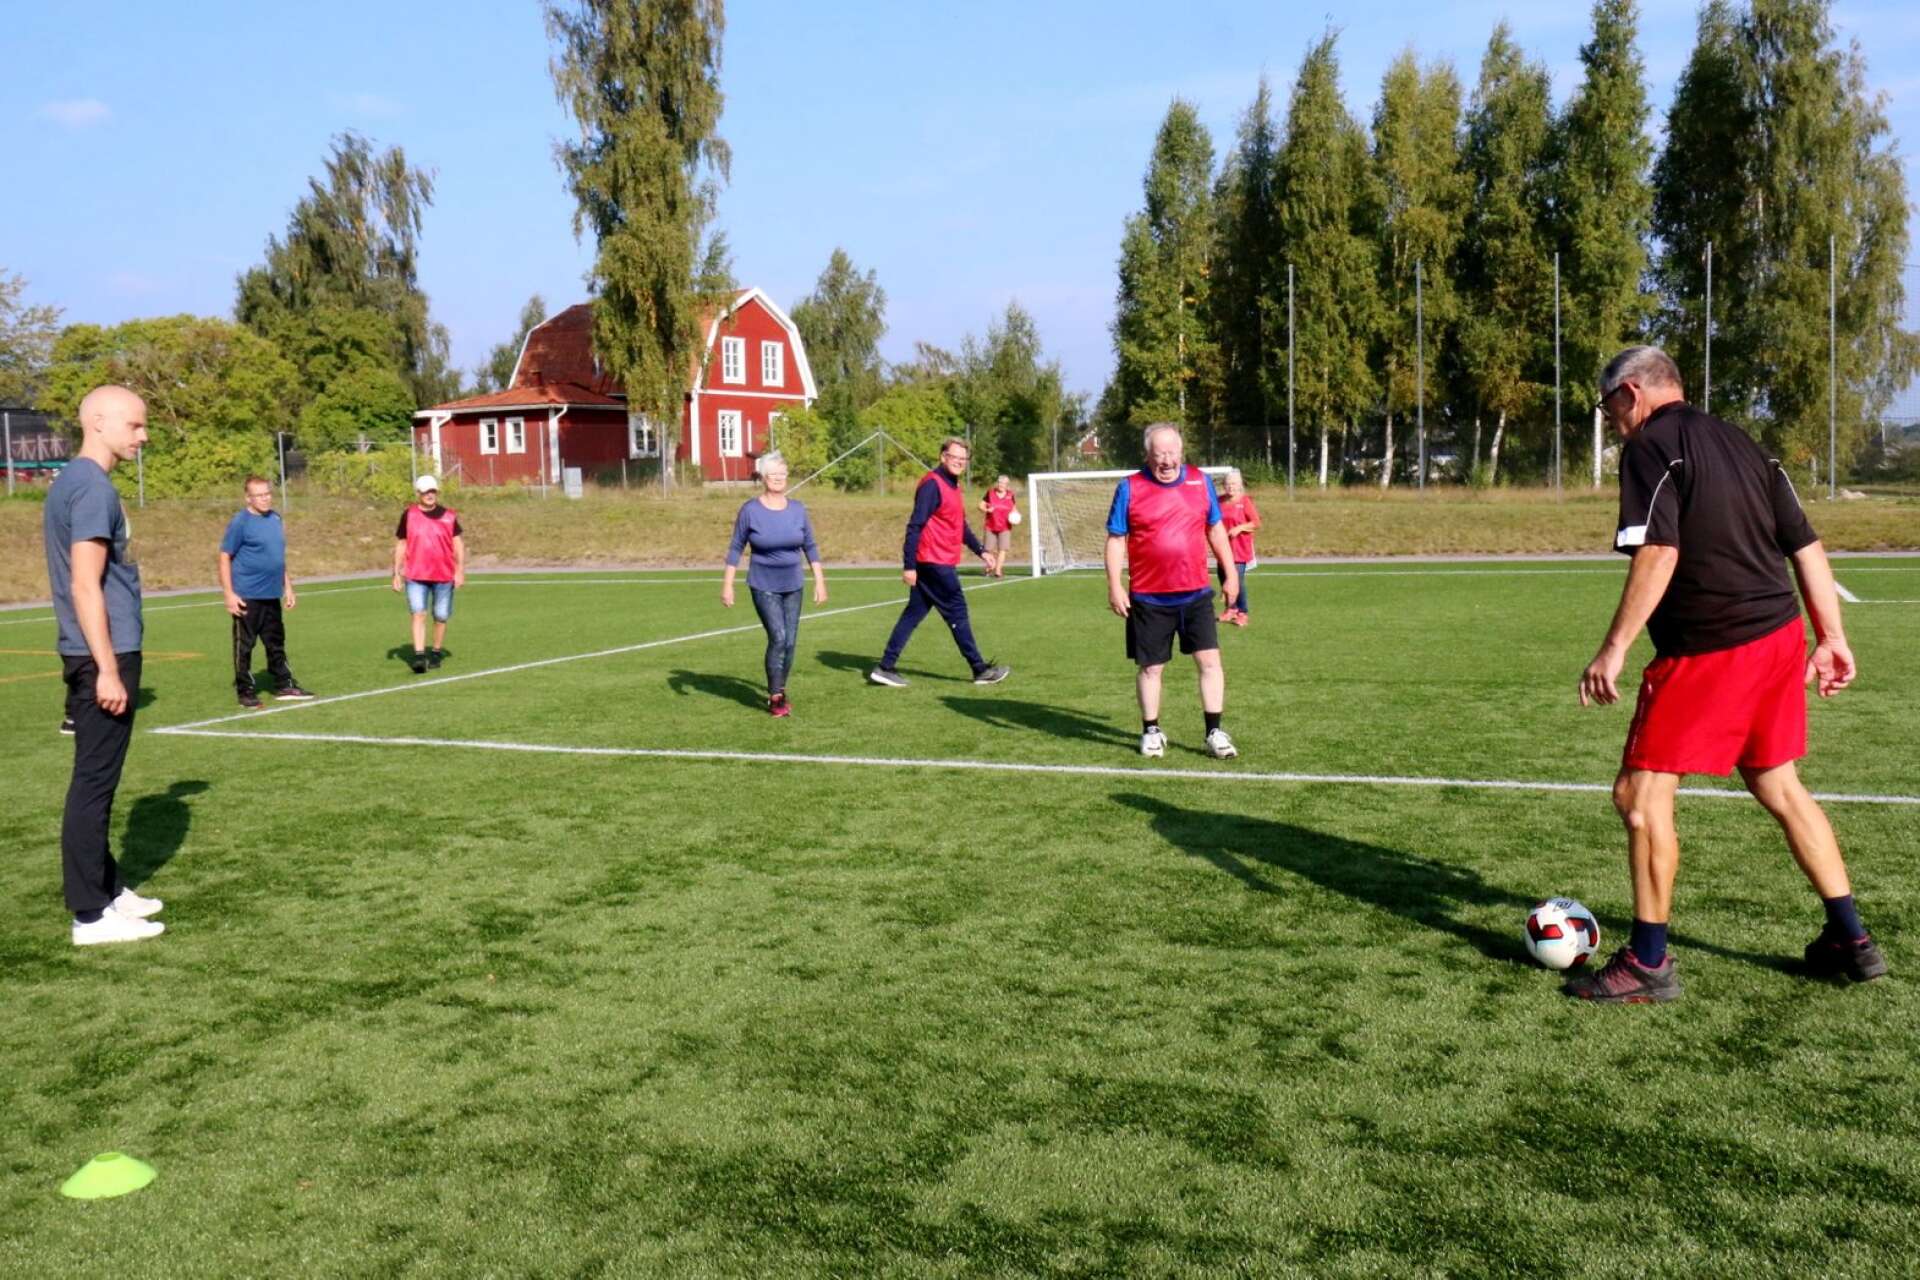 Första upplagan av Senior sport school i Hjo 2021 med gåfotboll på konstgräset.